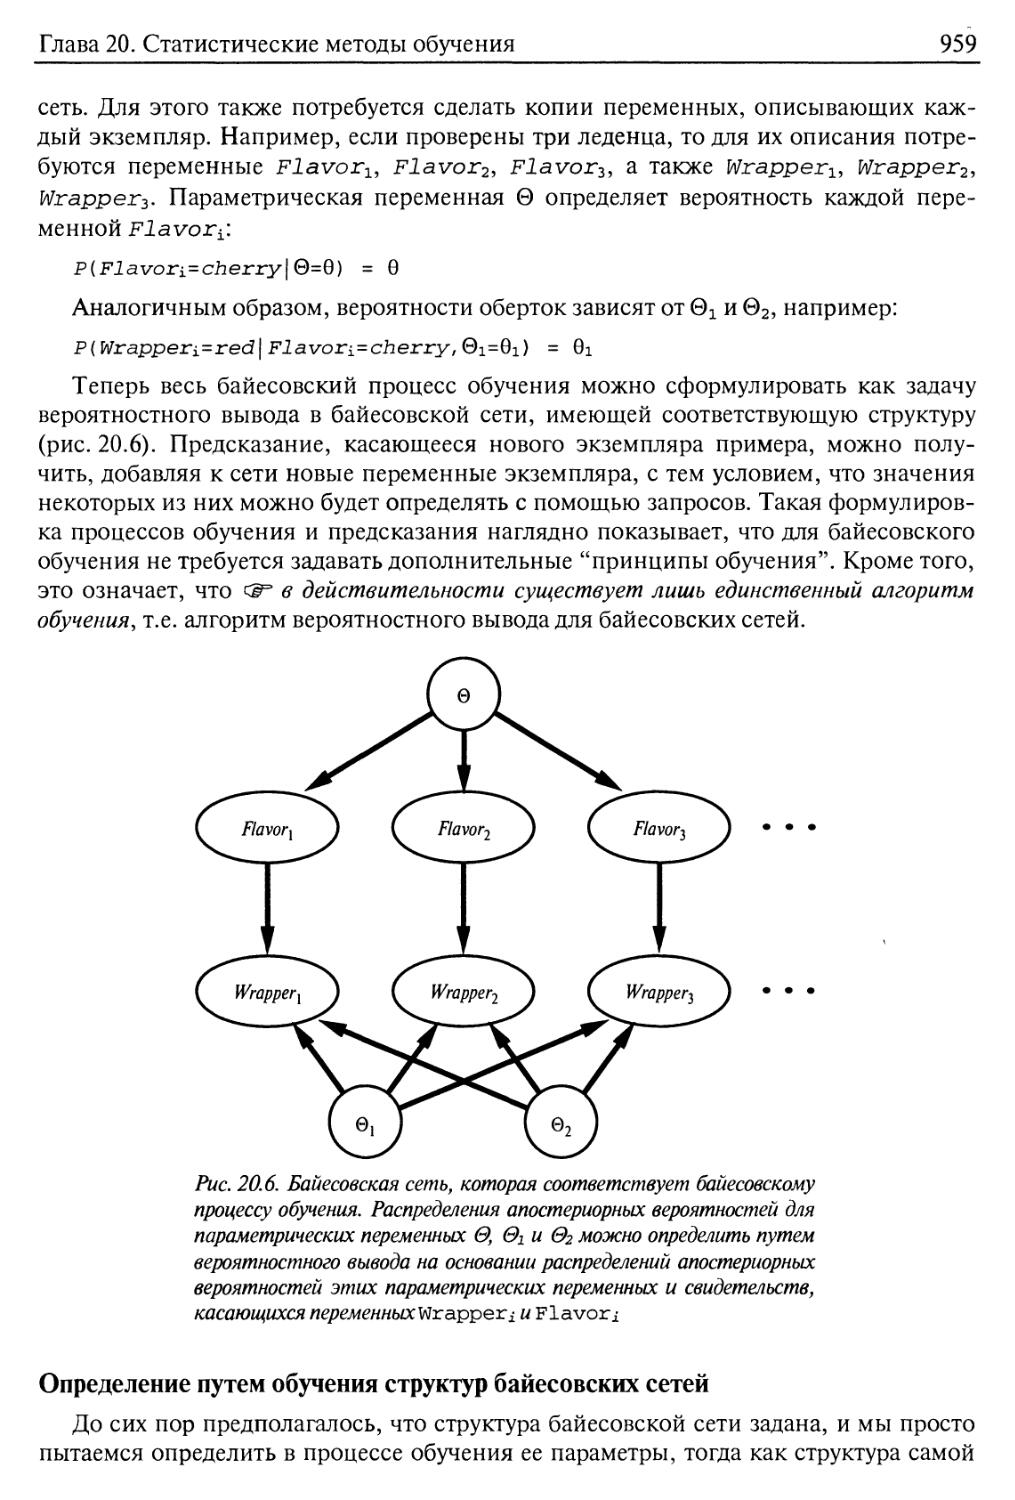 Определение путем обучения структур байесовских сетей